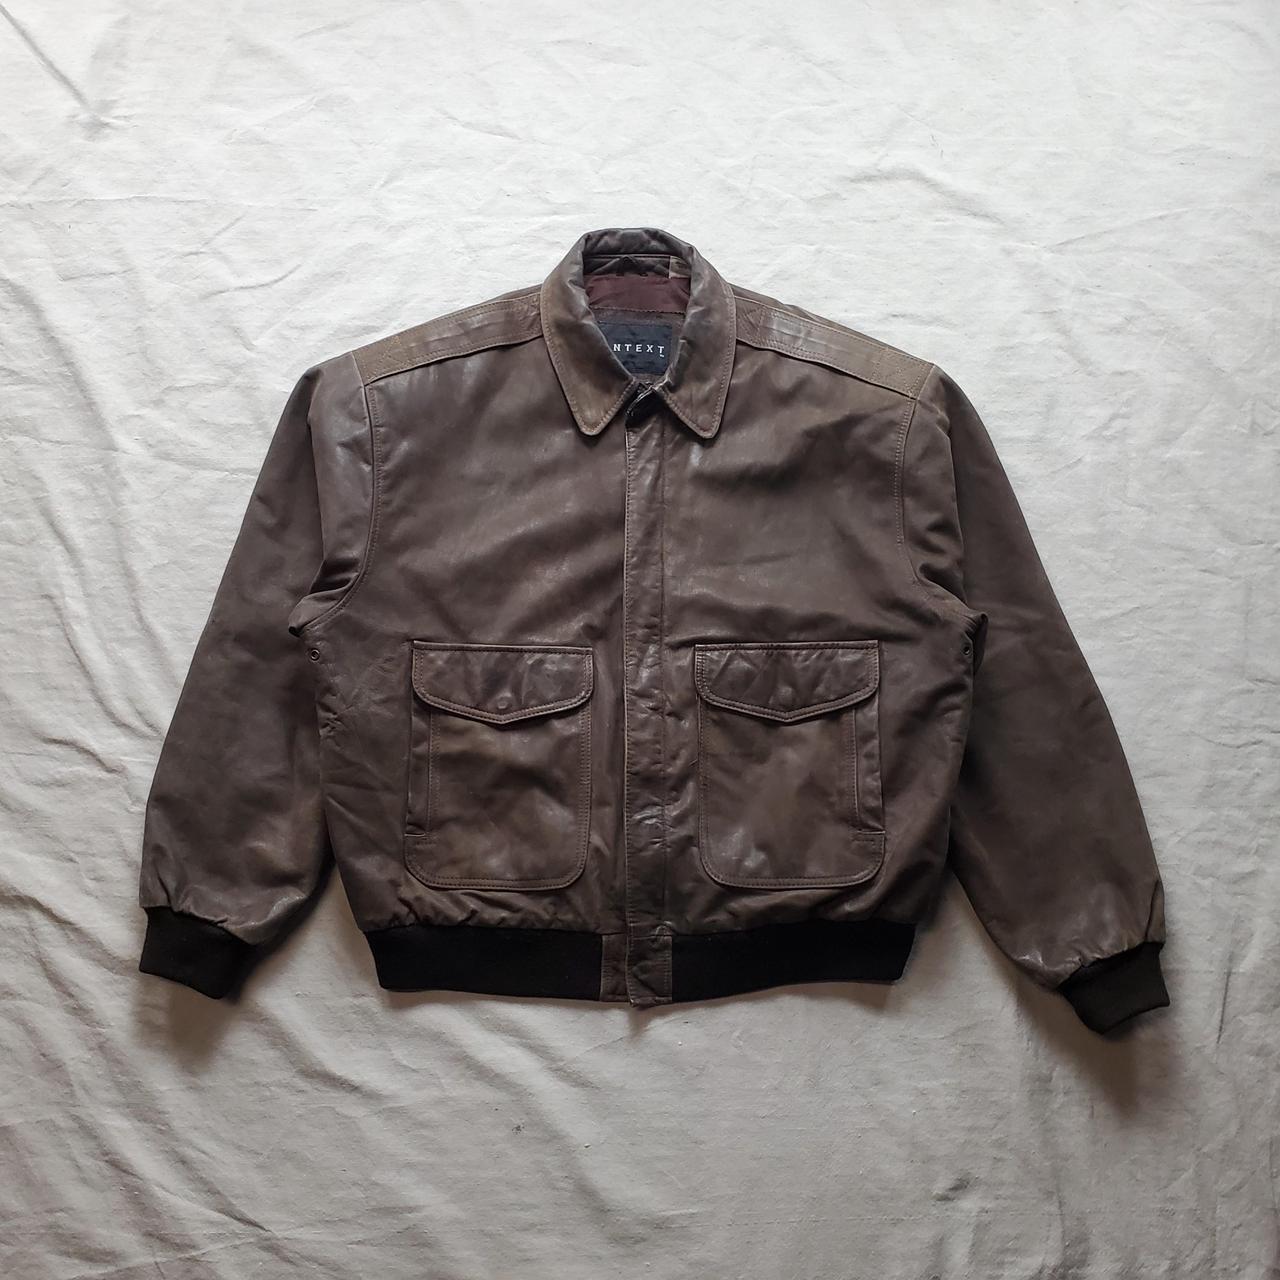 Vintage leather bomber jacket brown Classic bomber... - Depop